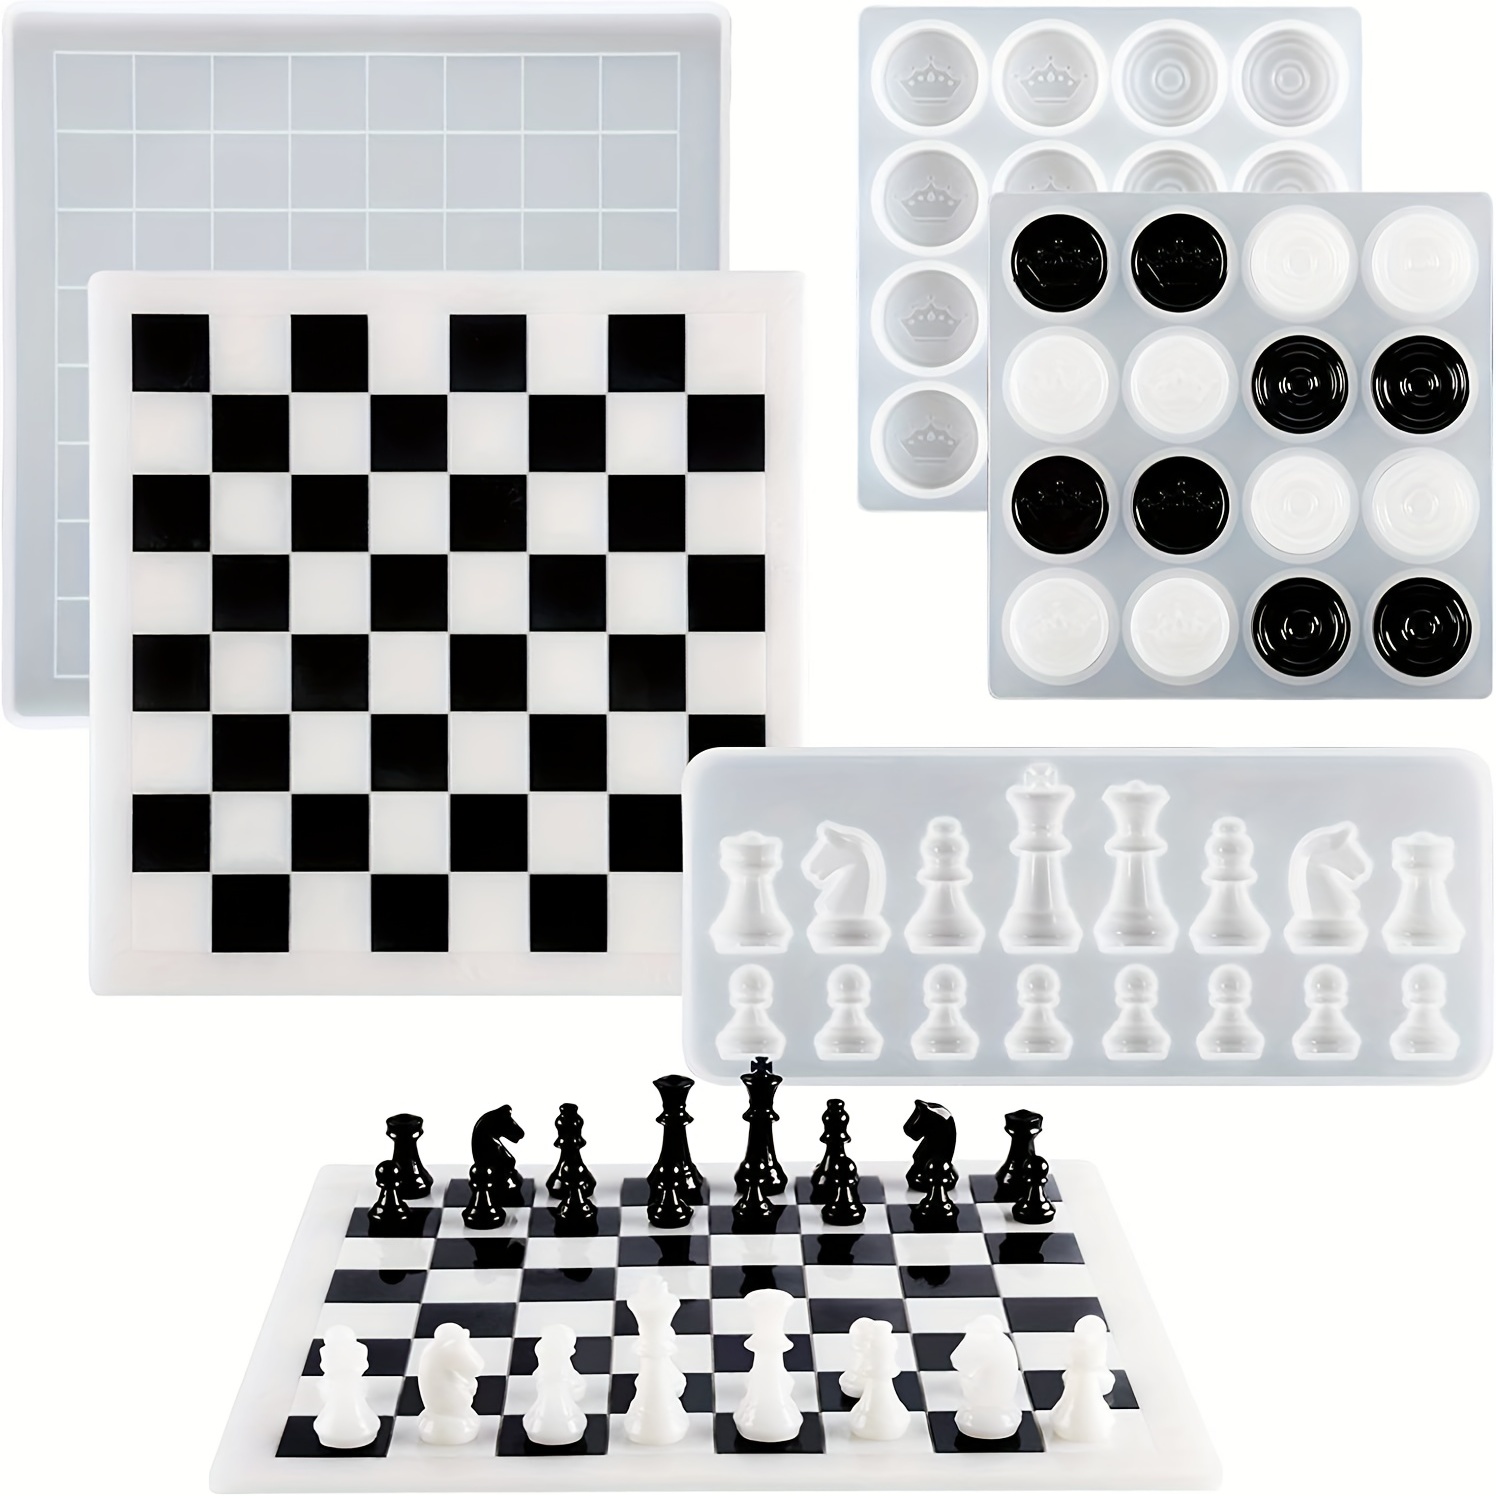 Épico tablero de ajedrez hecho con resina epoxi y un trozo de